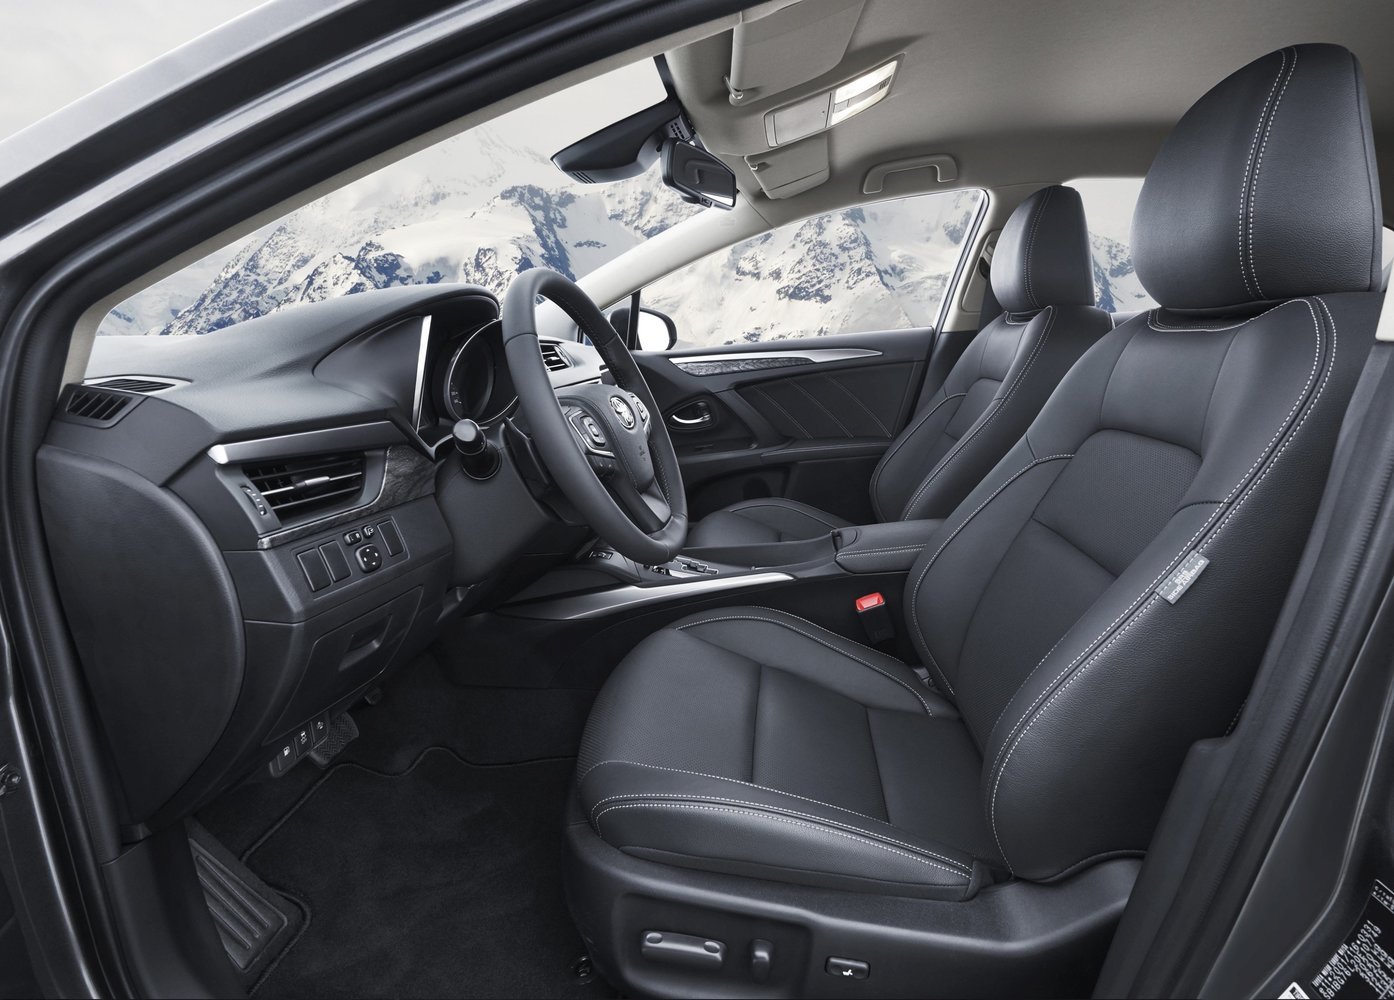 универсал Toyota Avensis 2015 - 2016г выпуска модификация 1.6 MT (112 л.с.)